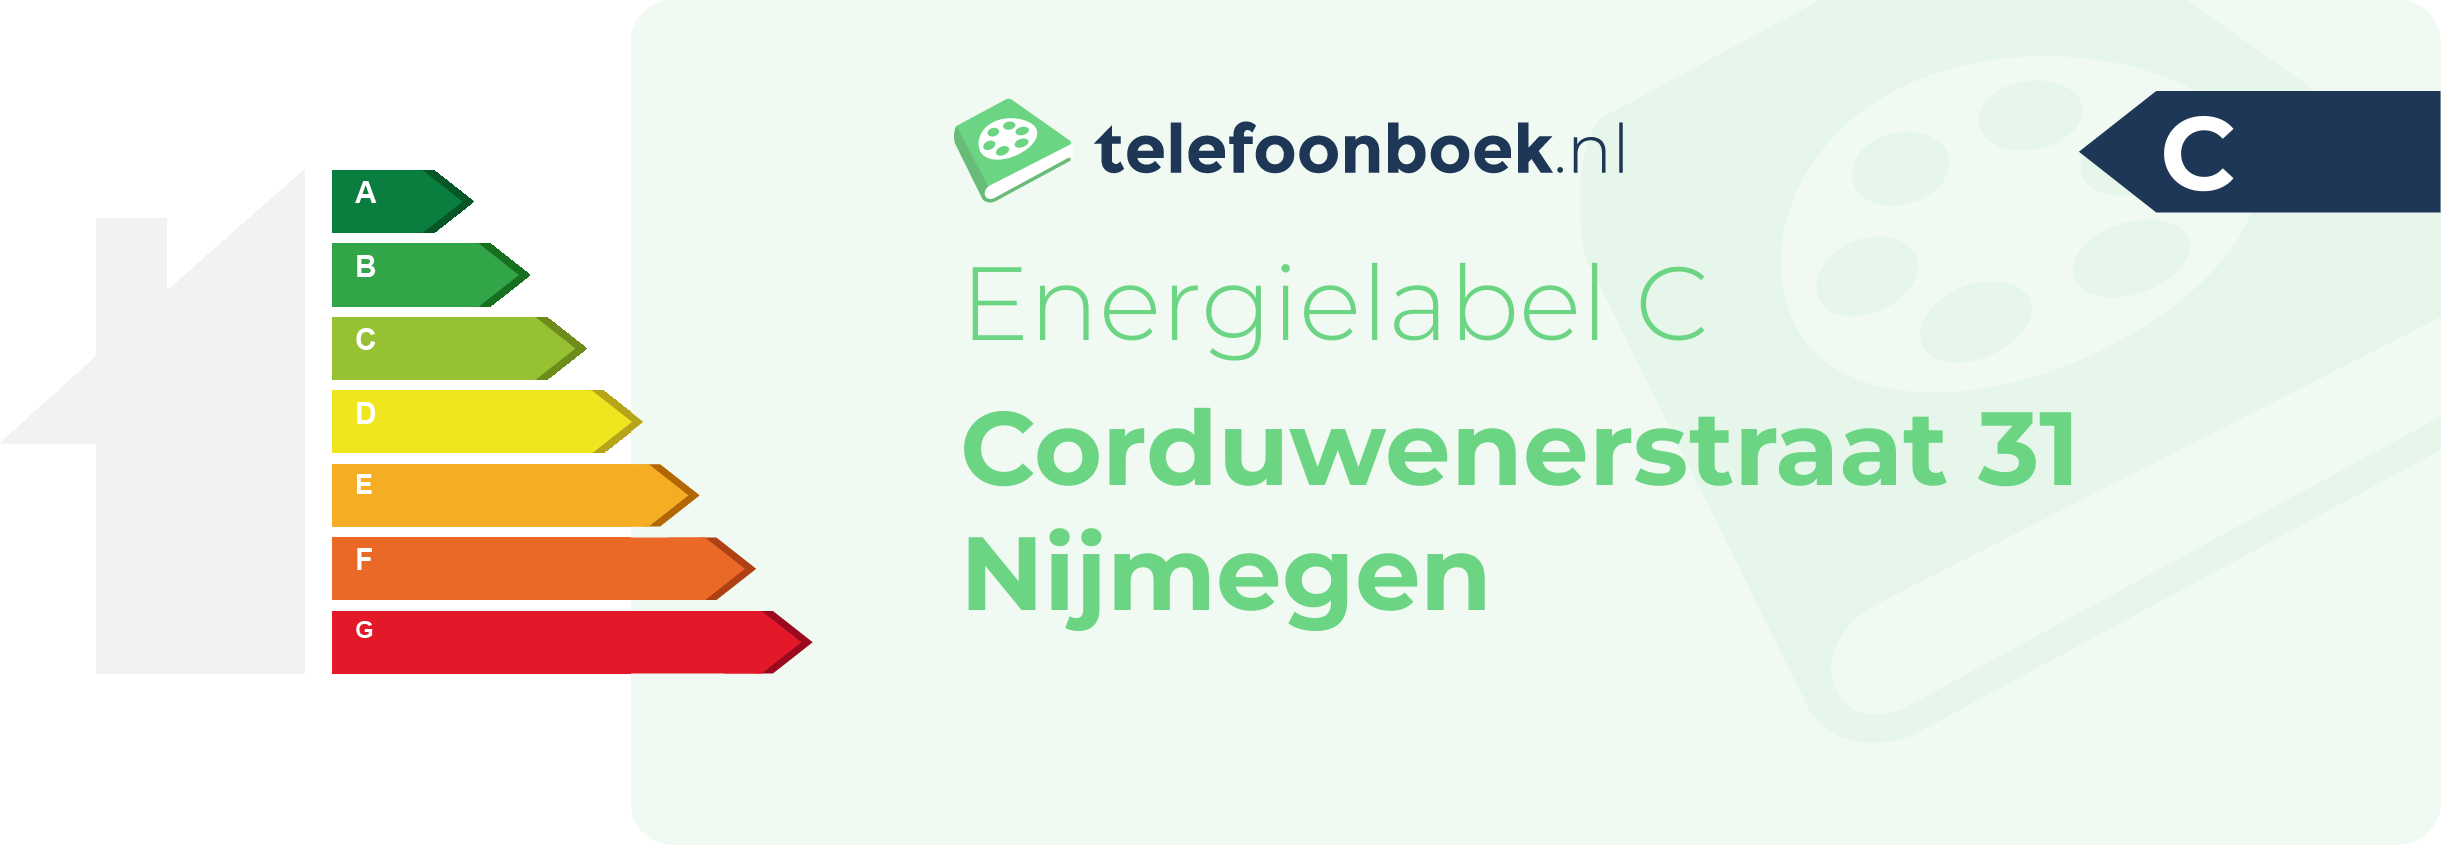 Energielabel Corduwenerstraat 31 Nijmegen